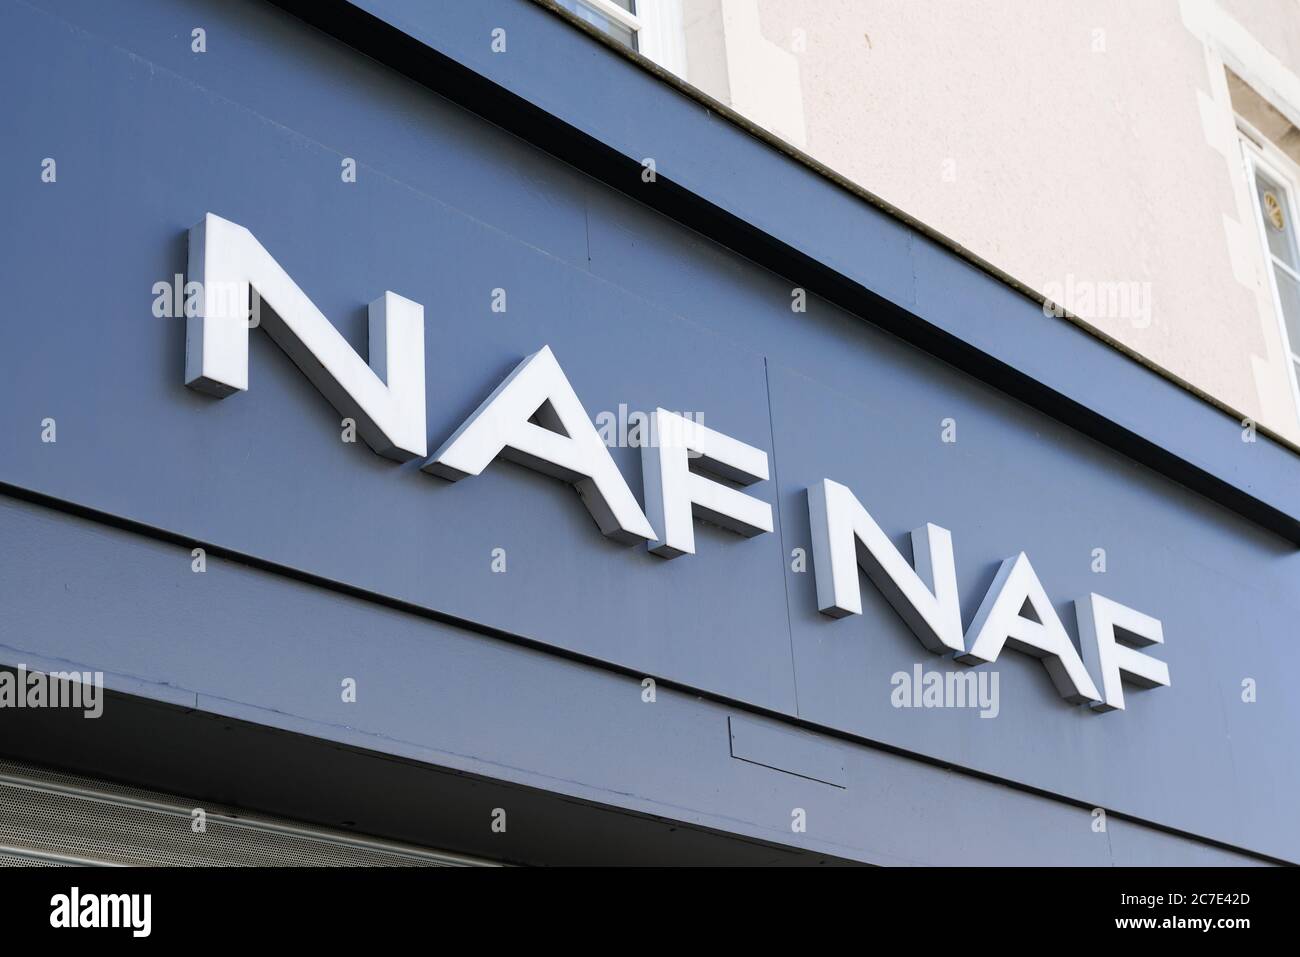 Naf naf sign hi-res stock photography and images - Alamy